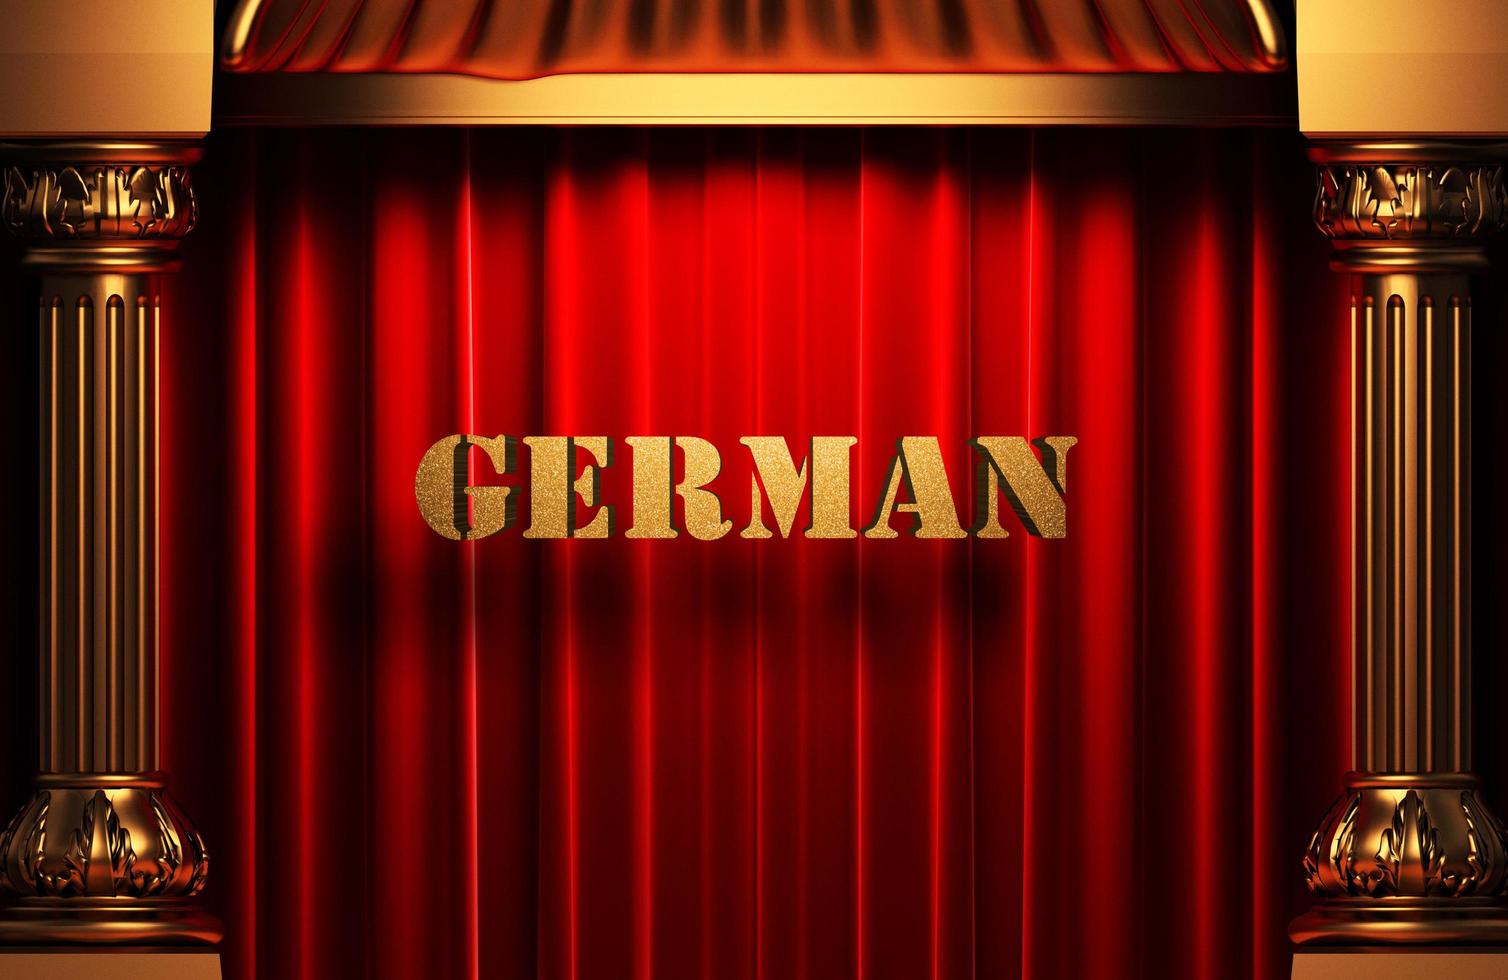 Duits gouden woord op rood gordijn foto